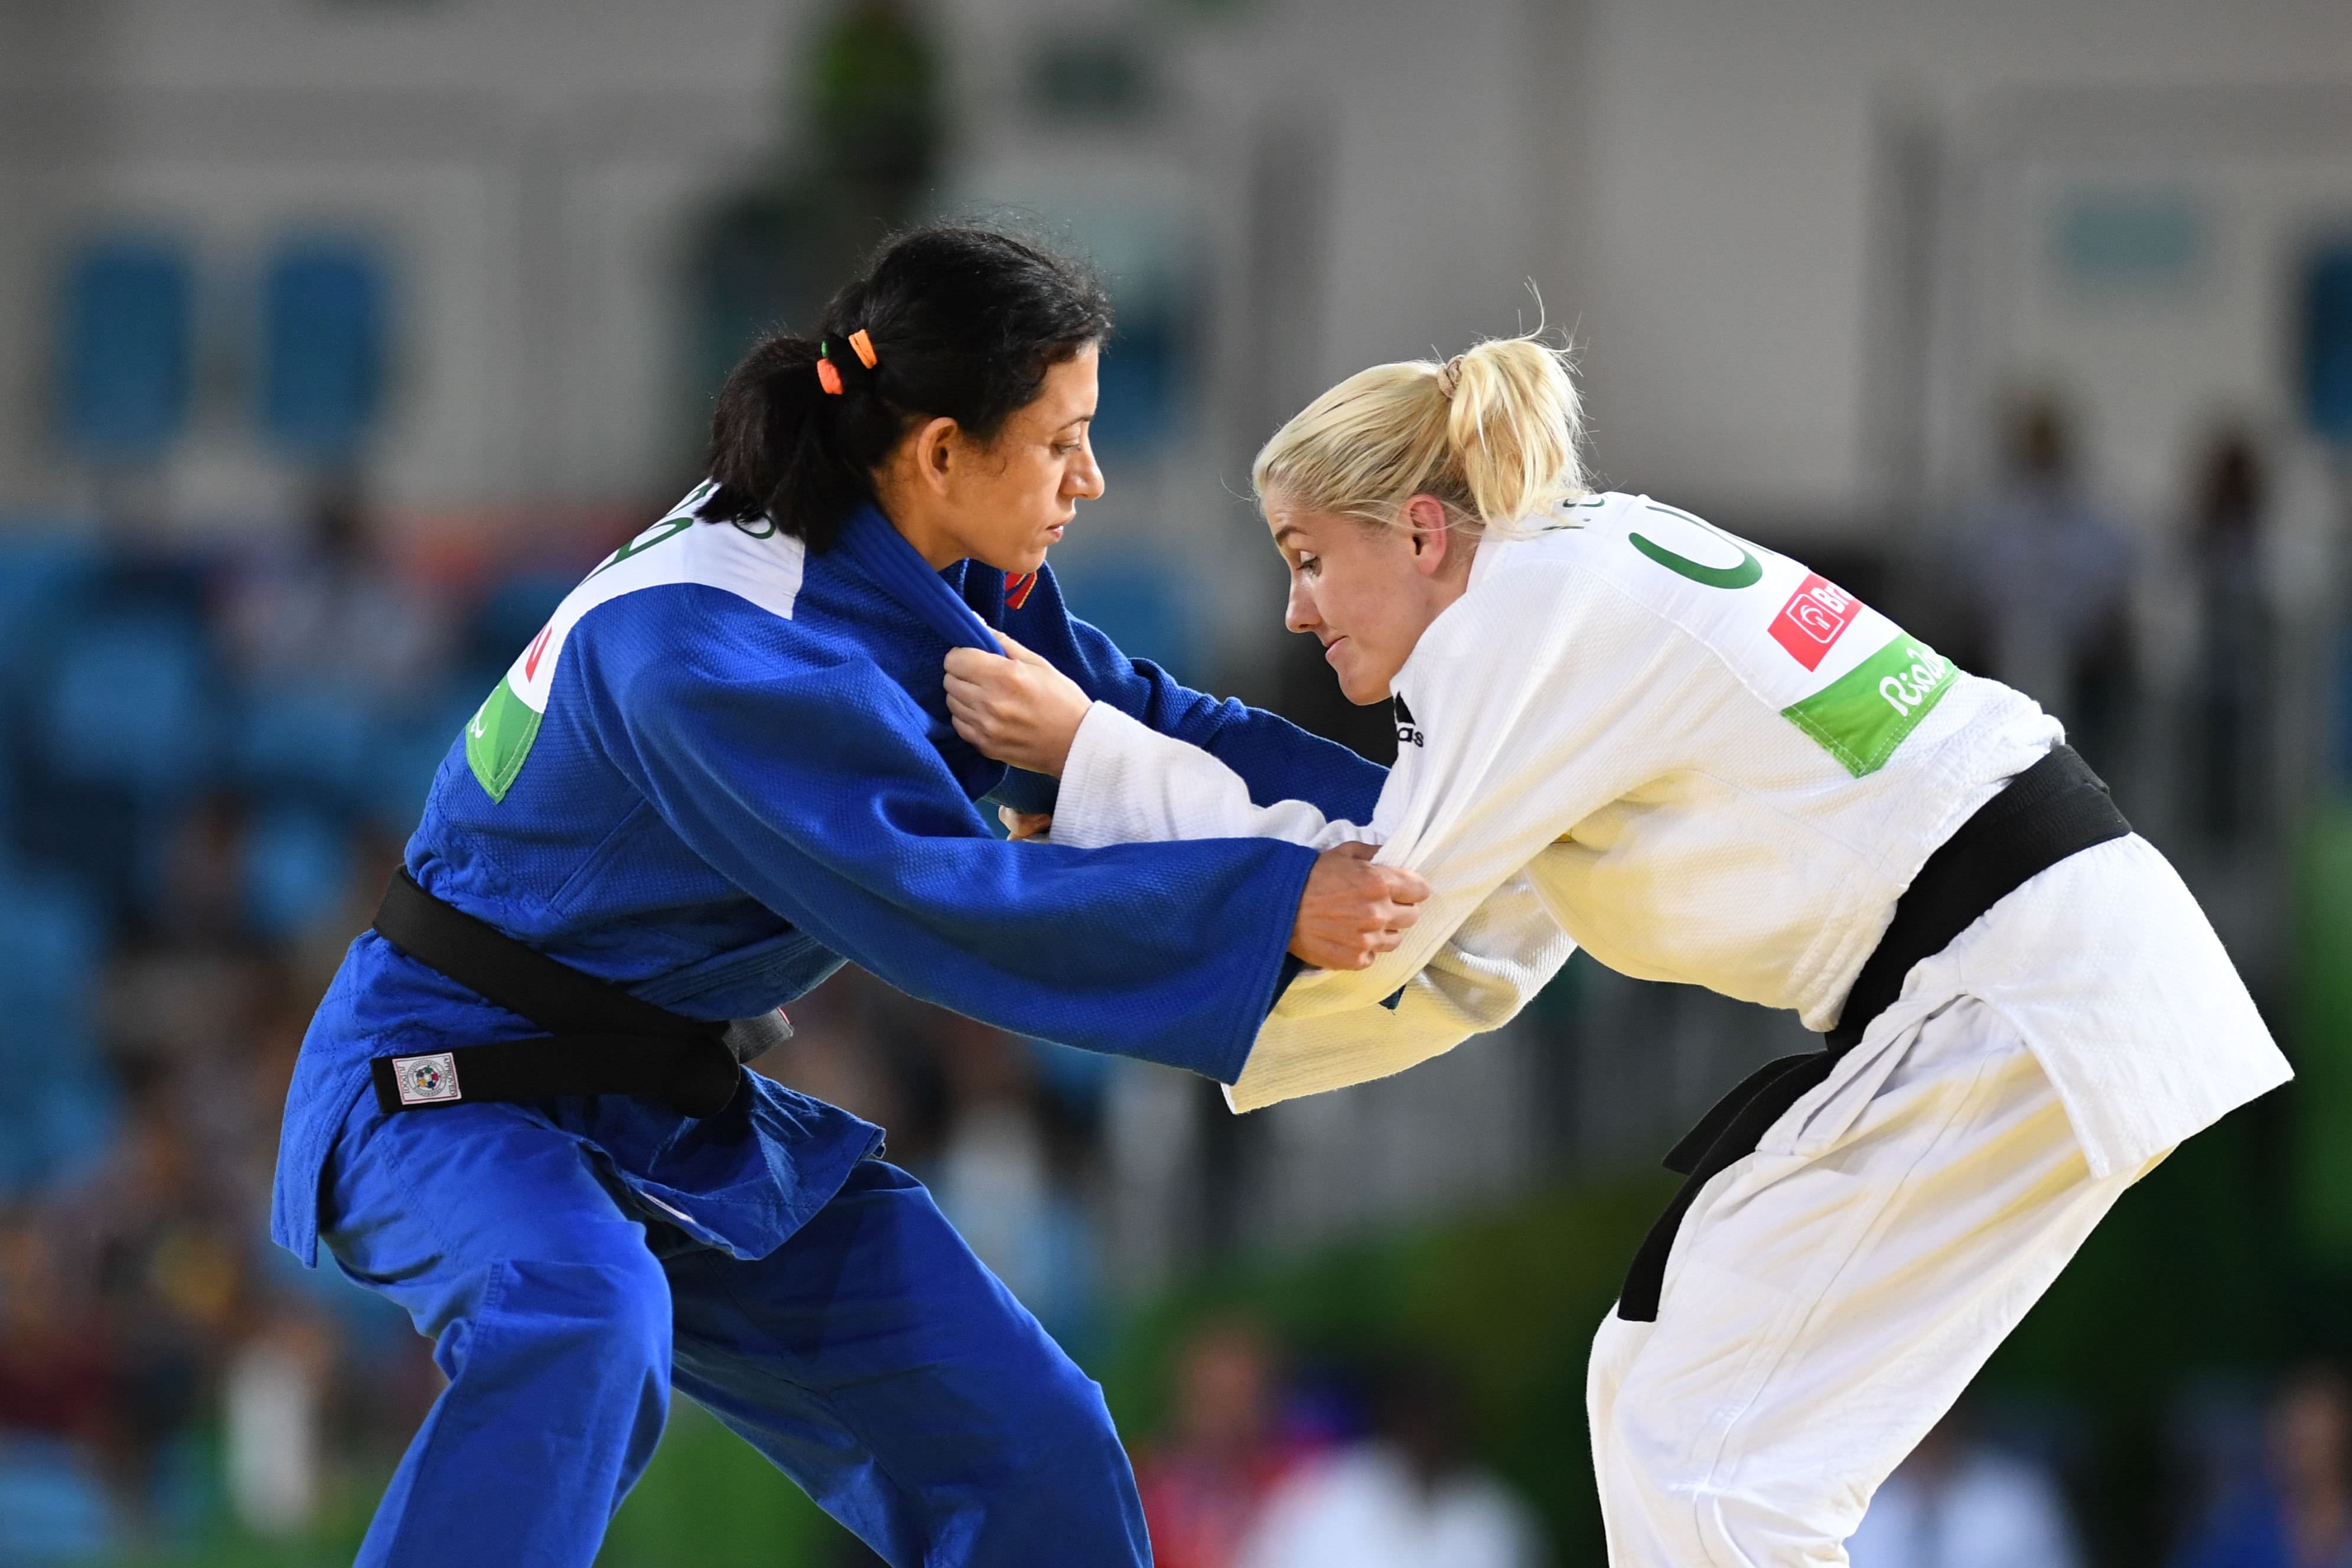 Péssima estreia em Ecaterimburgo e melhores judocas ficam em sétimo